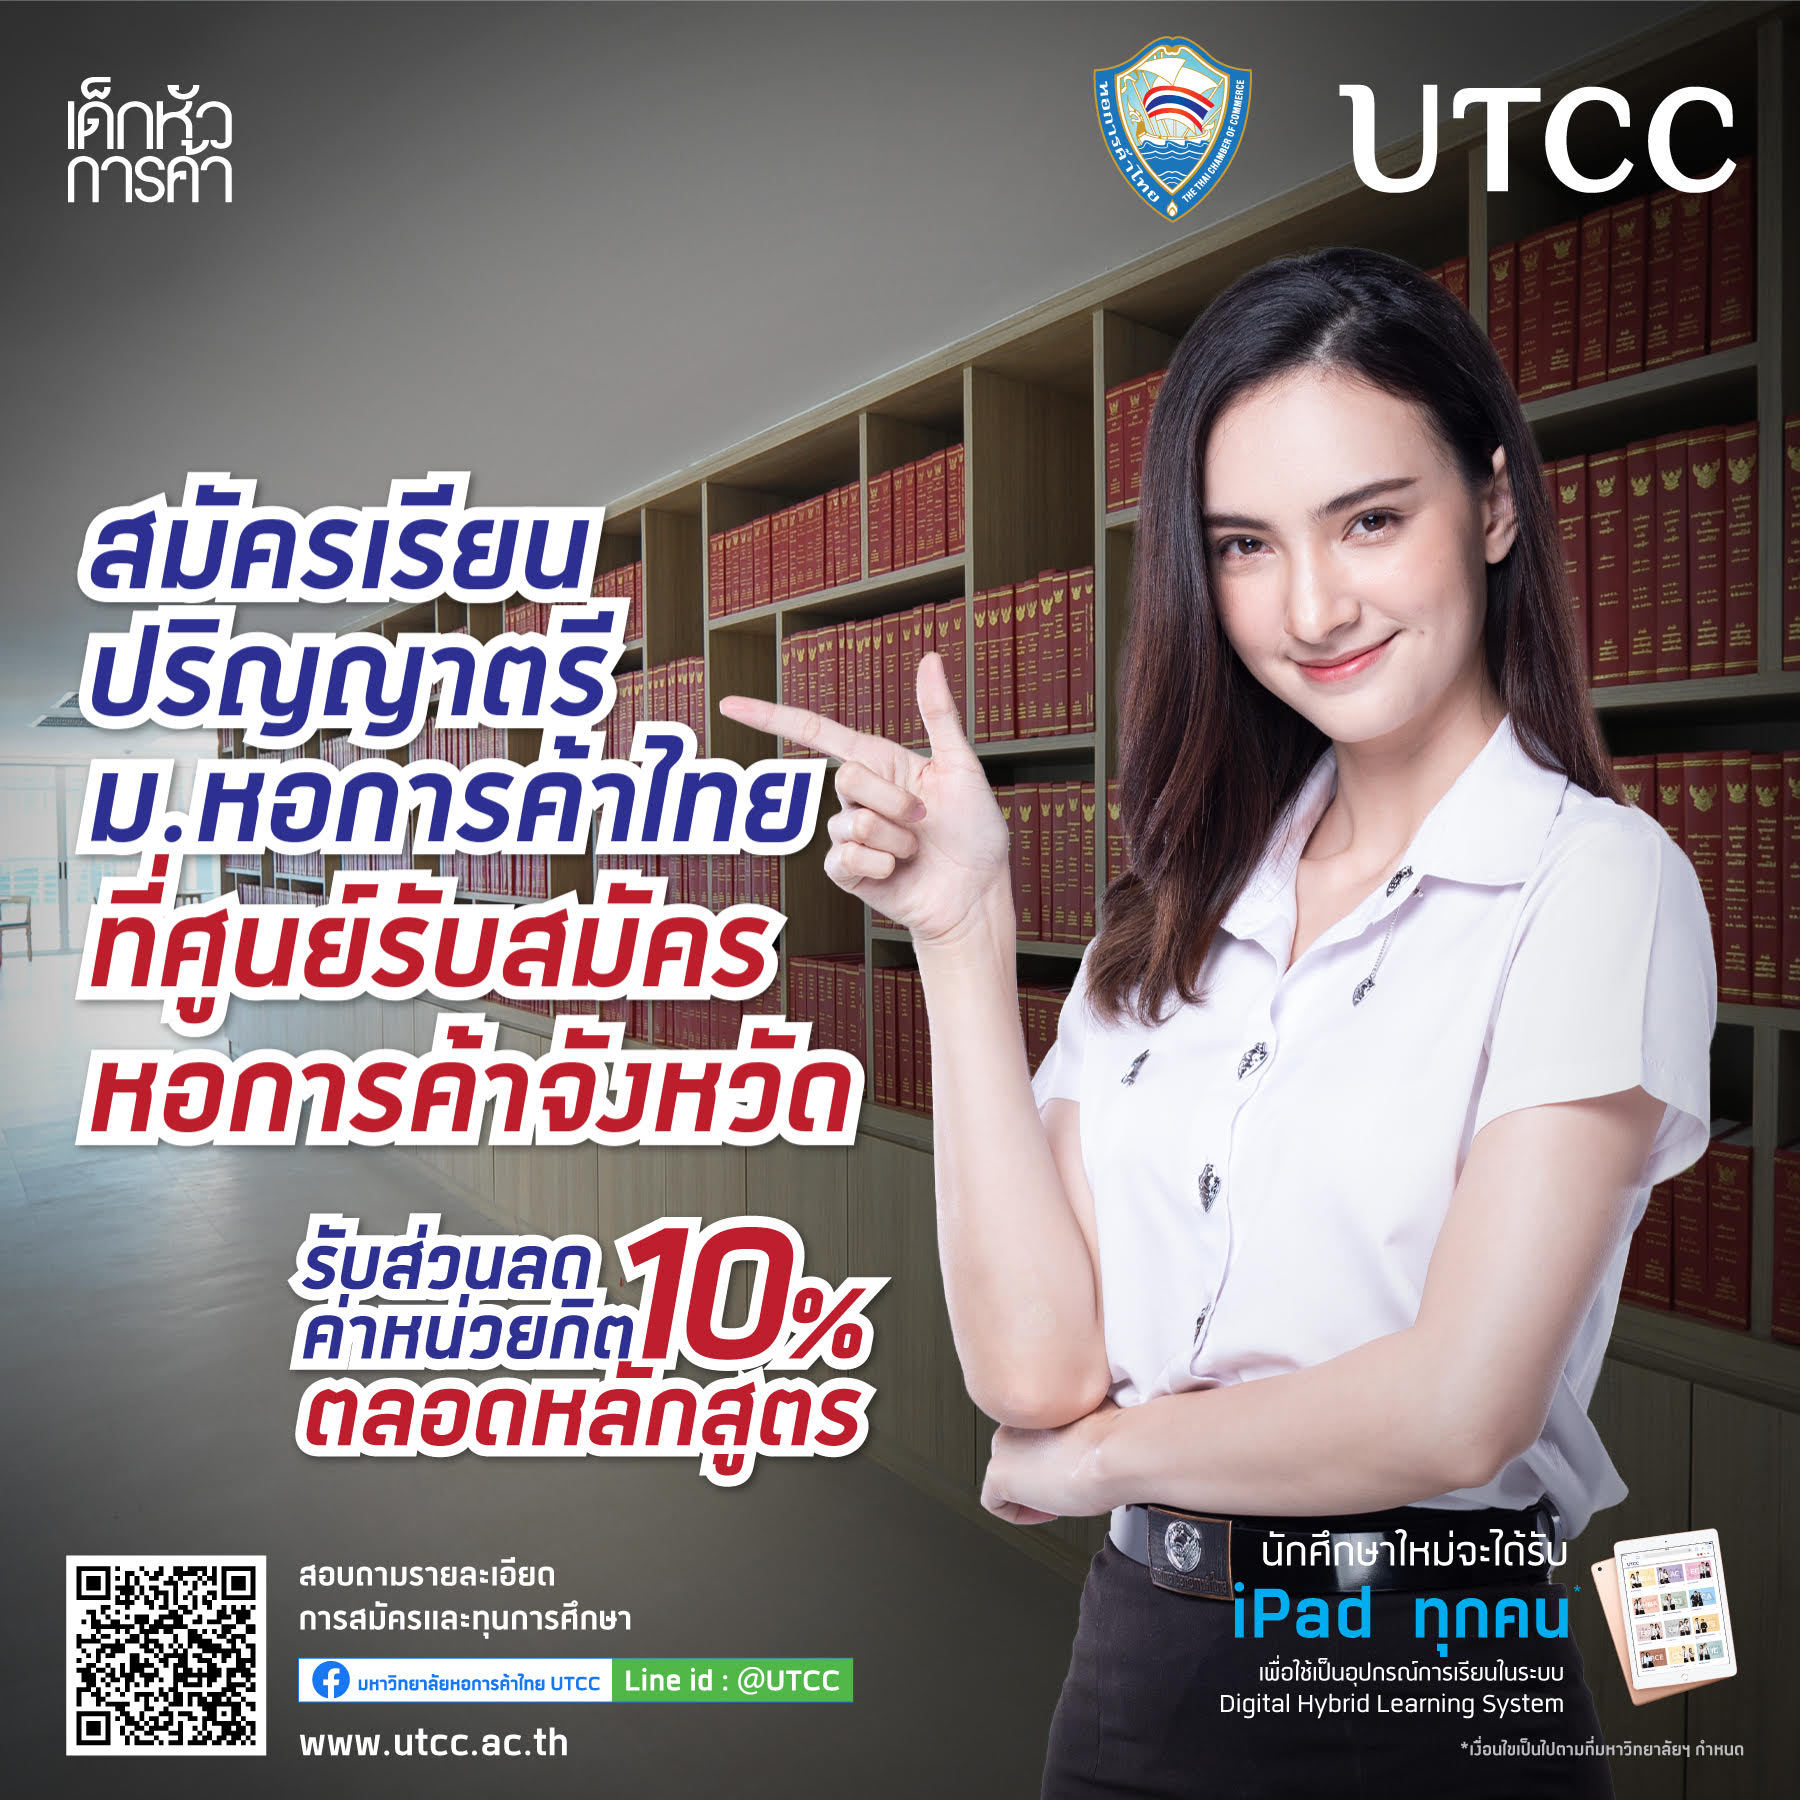 เชิญชวนนักเรียน นักศึกษา สมัครเข้าศึกษาต่อในมหาวิทยาลัยหอการค้าไทย ประจำปีการศึกษา 2563-2564